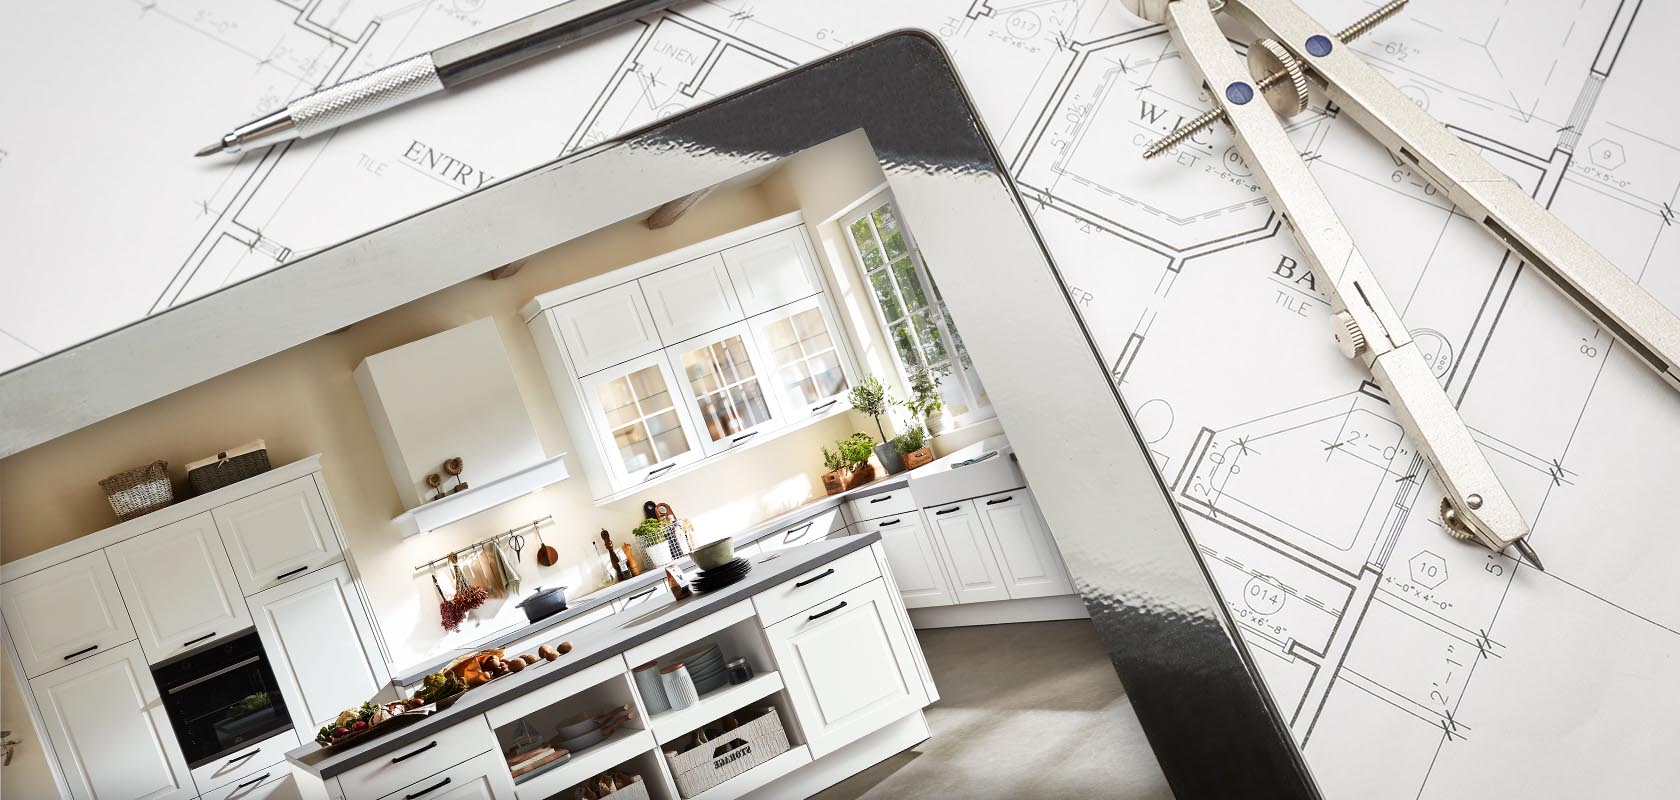 Transizione dai progetti a una cucina elegante e moderna con armadi bianchi, mostrando la trasformazione dal design al completamento nella ristrutturazione della casa.